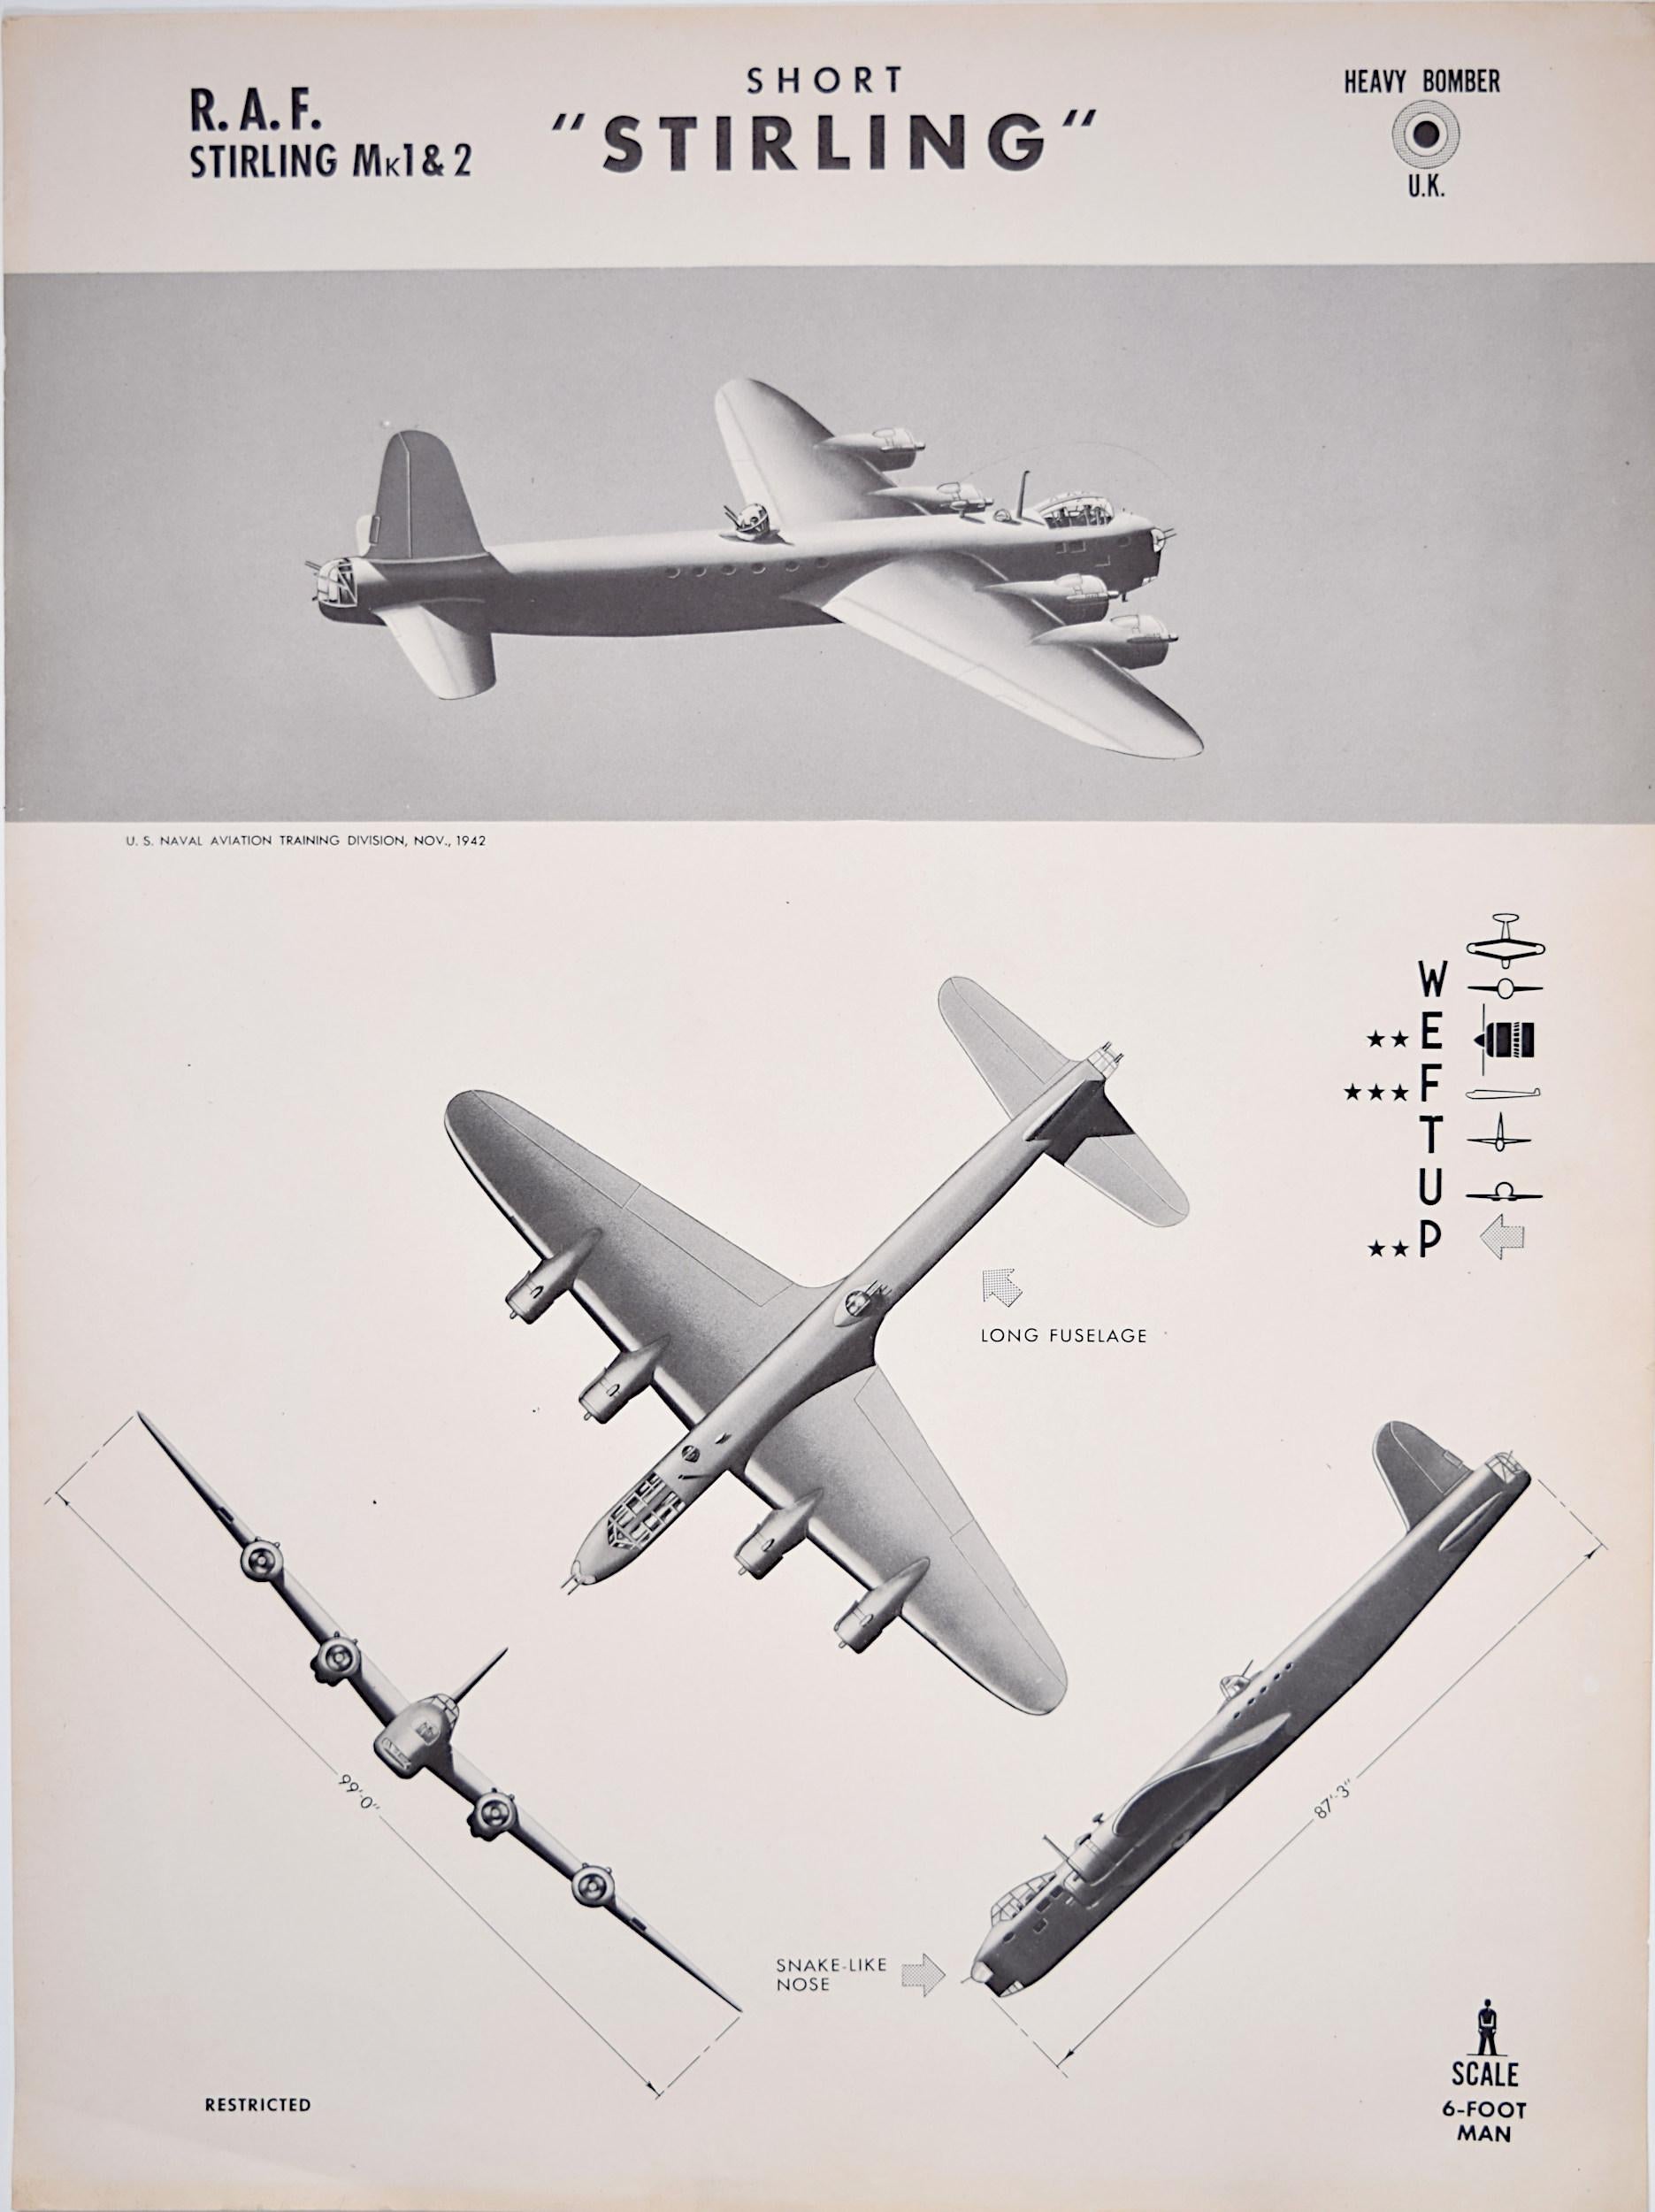 Print Unknown - Affiche de reconnaissance d'avions Short Stirling de la Royal Air Force datant de 1943. États-Unis Navy